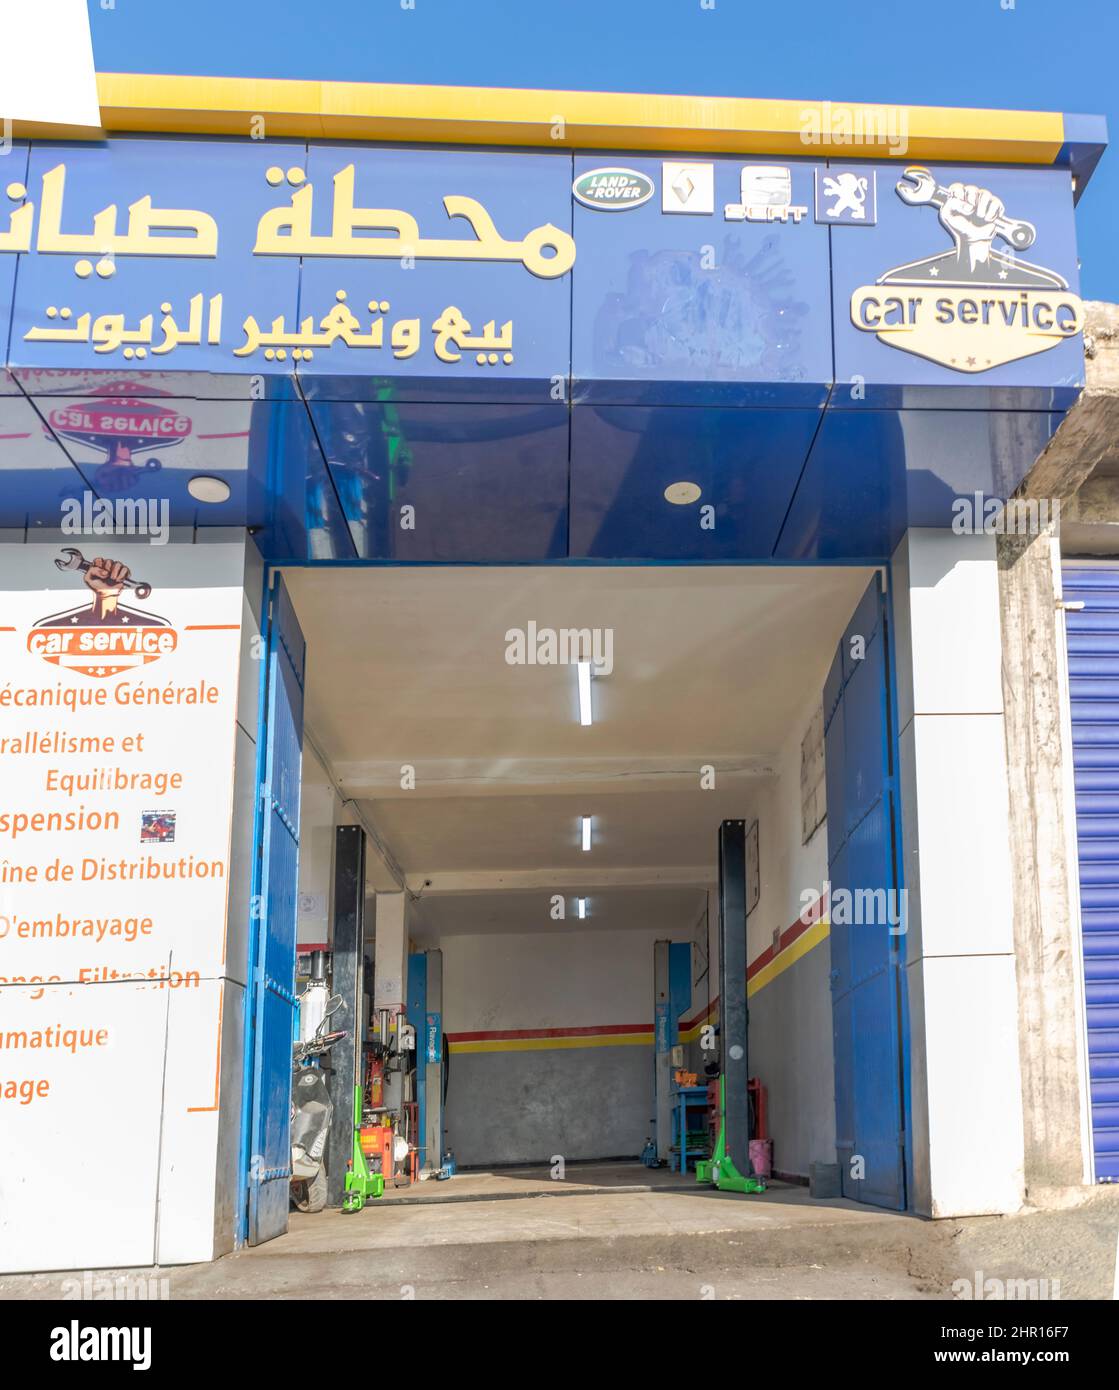 Garage di servizio auto vuoto per la riparazione di veicoli con i marchi delle aziende, targhetta in arabo, inglese e francese. Logo di una mano che tiene una chiave. Foto Stock